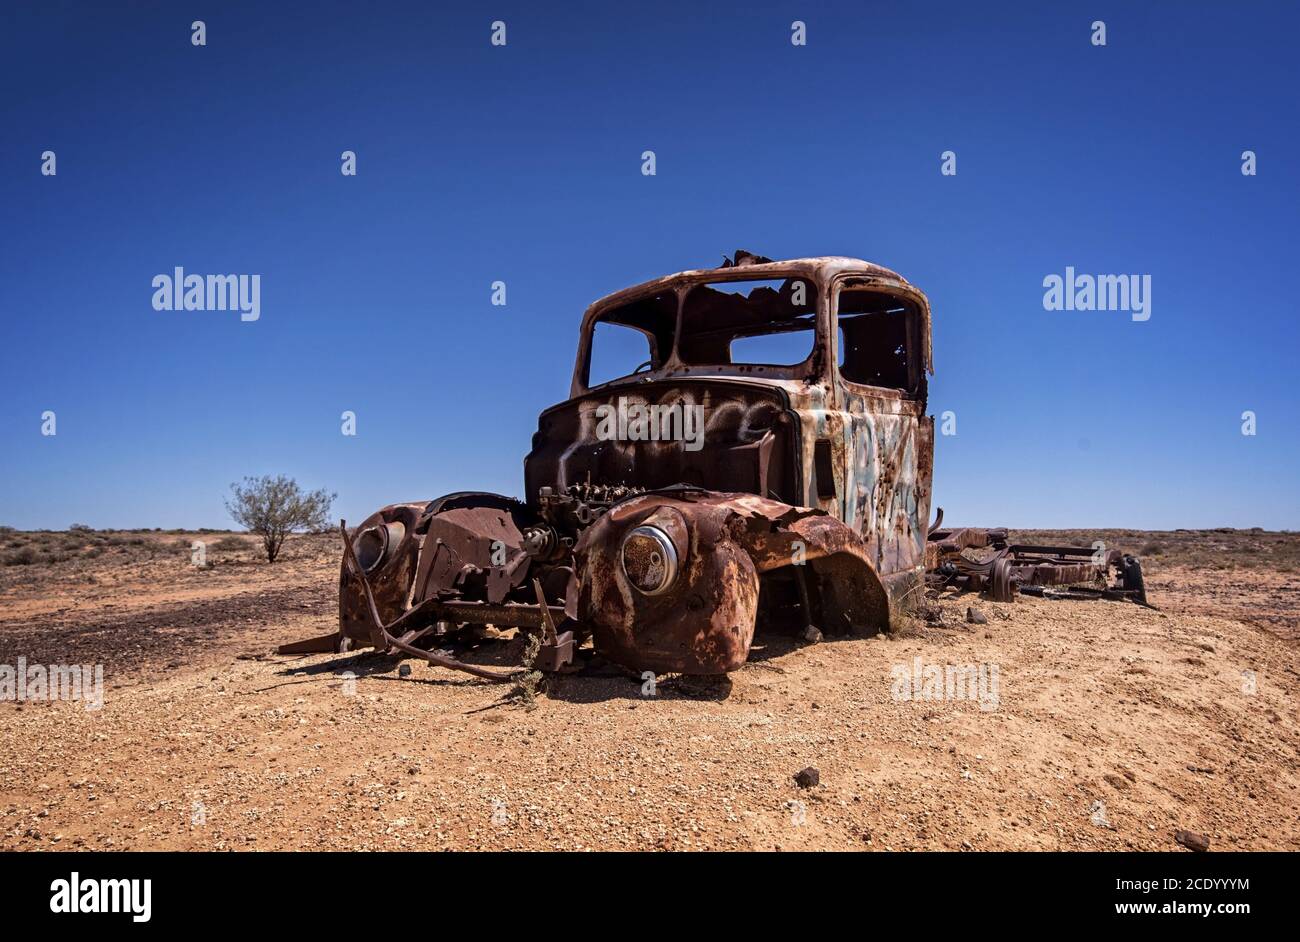 Australie – désert de l'Outback avec une vieille voiture abandonnée près de la piste sous ciel bleu Banque D'Images